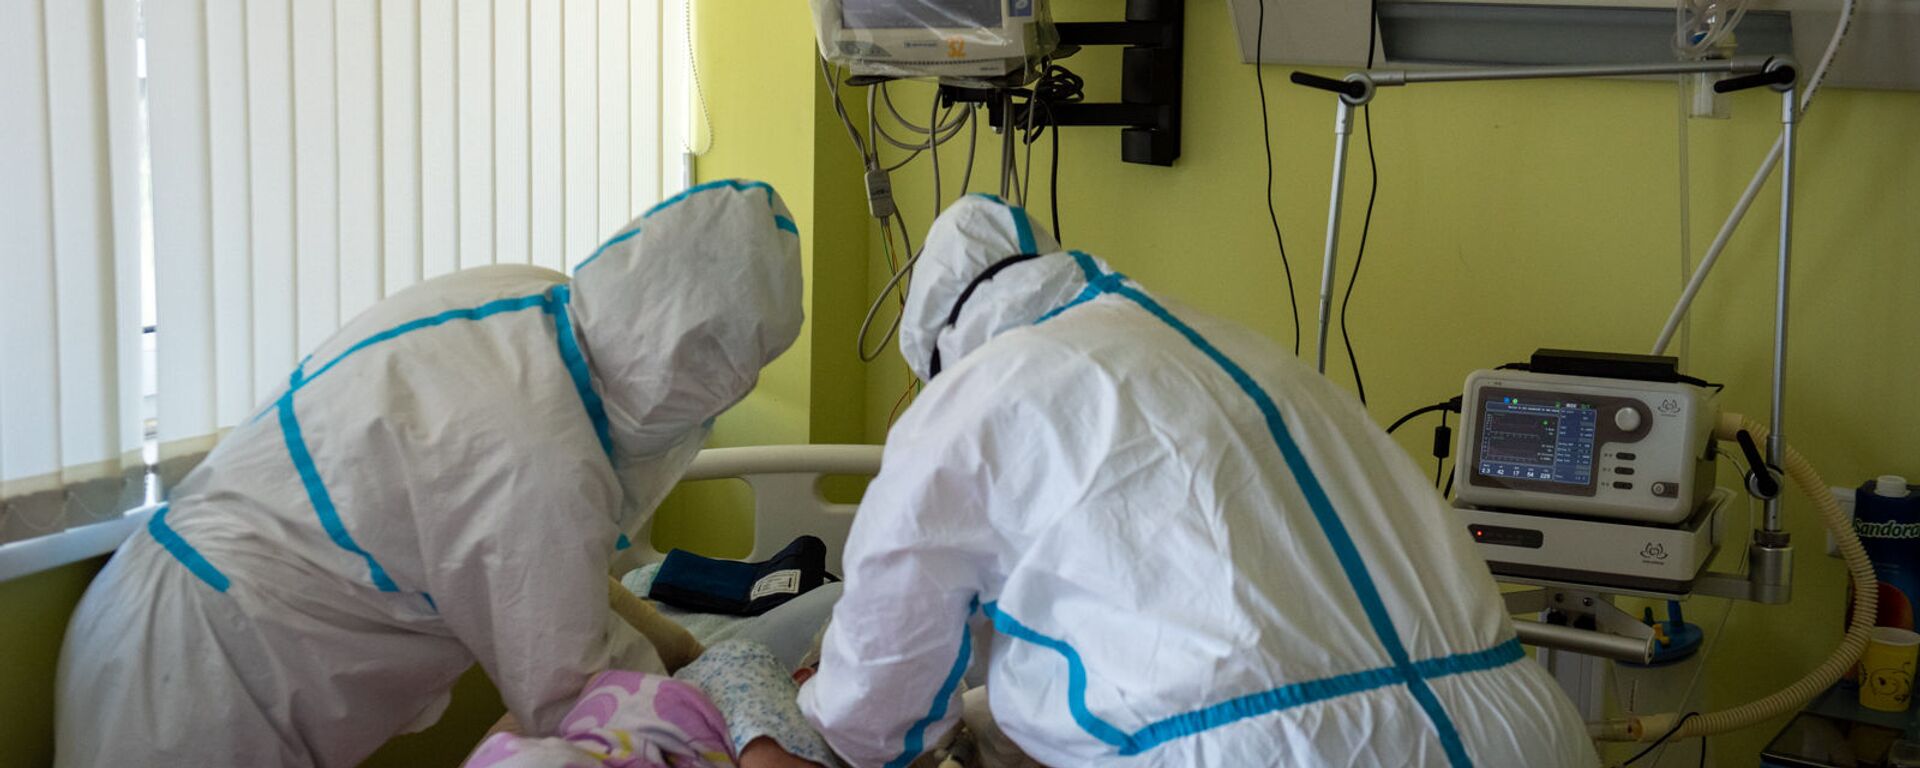 Медсестры ухаживают за пациентом в реанимации медцентра Арташат - Sputnik Արմենիա, 1920, 31.08.2021